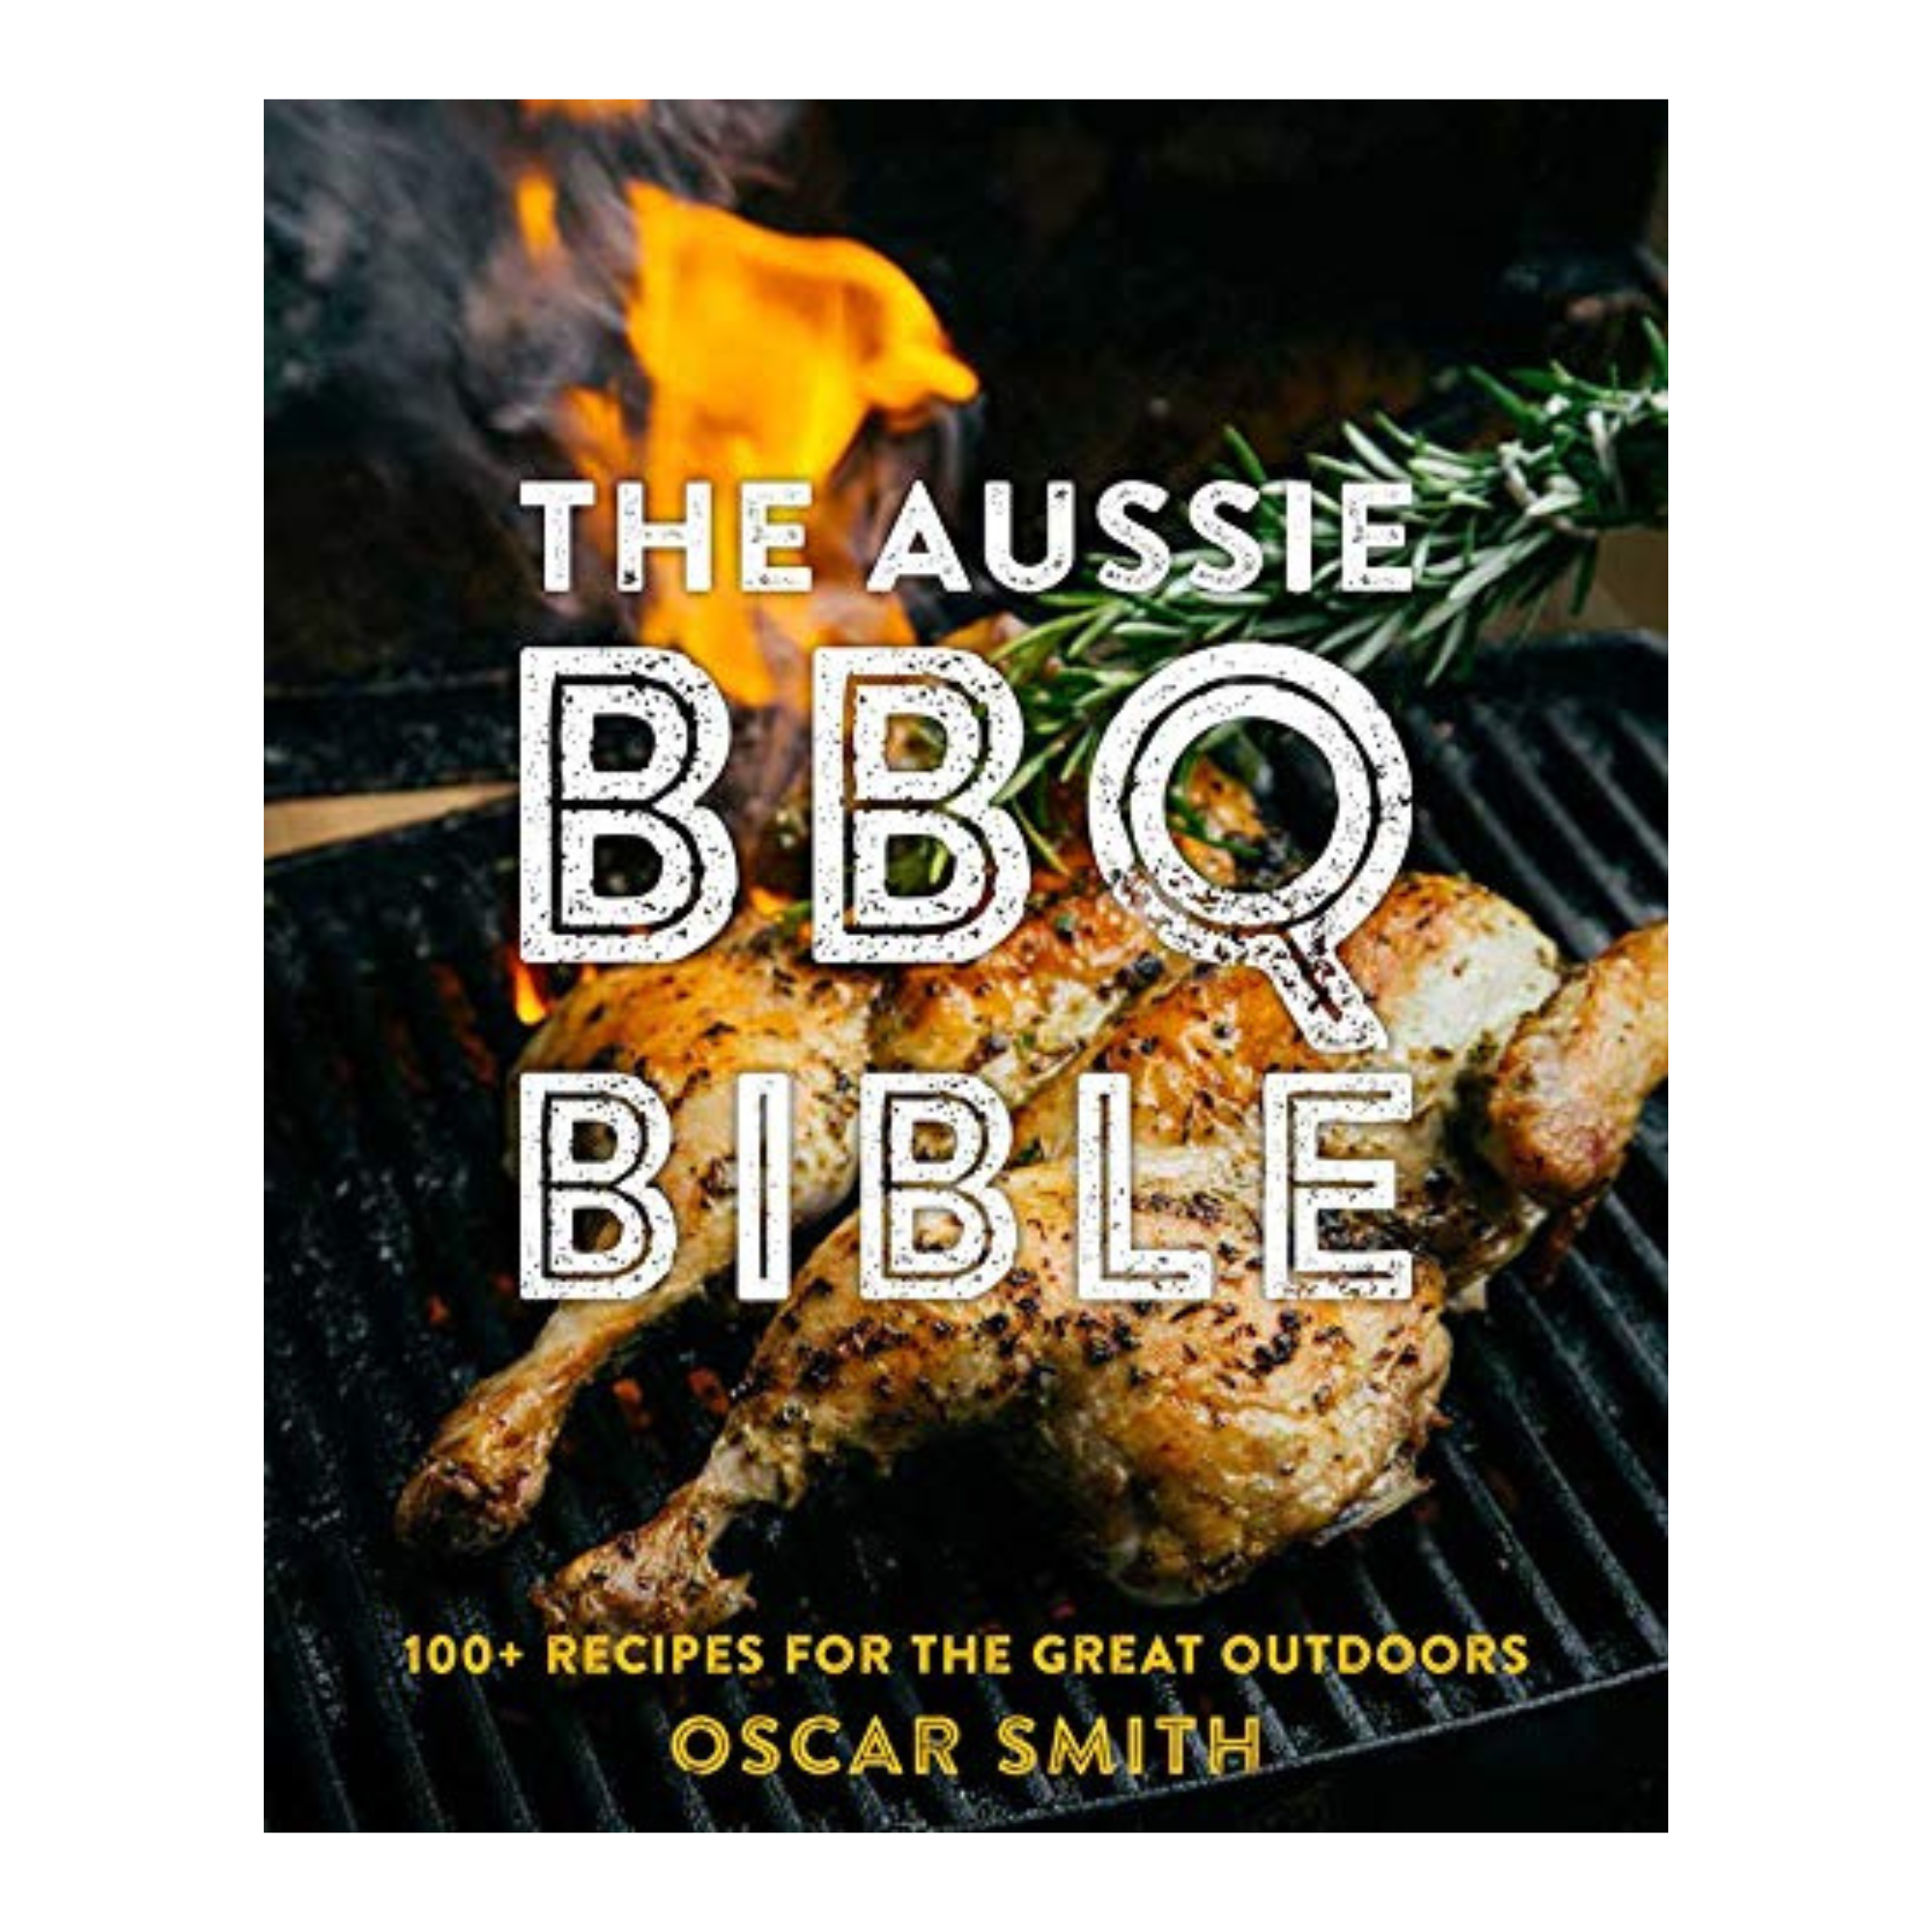 THE AUSSIE BBQ BIBLE